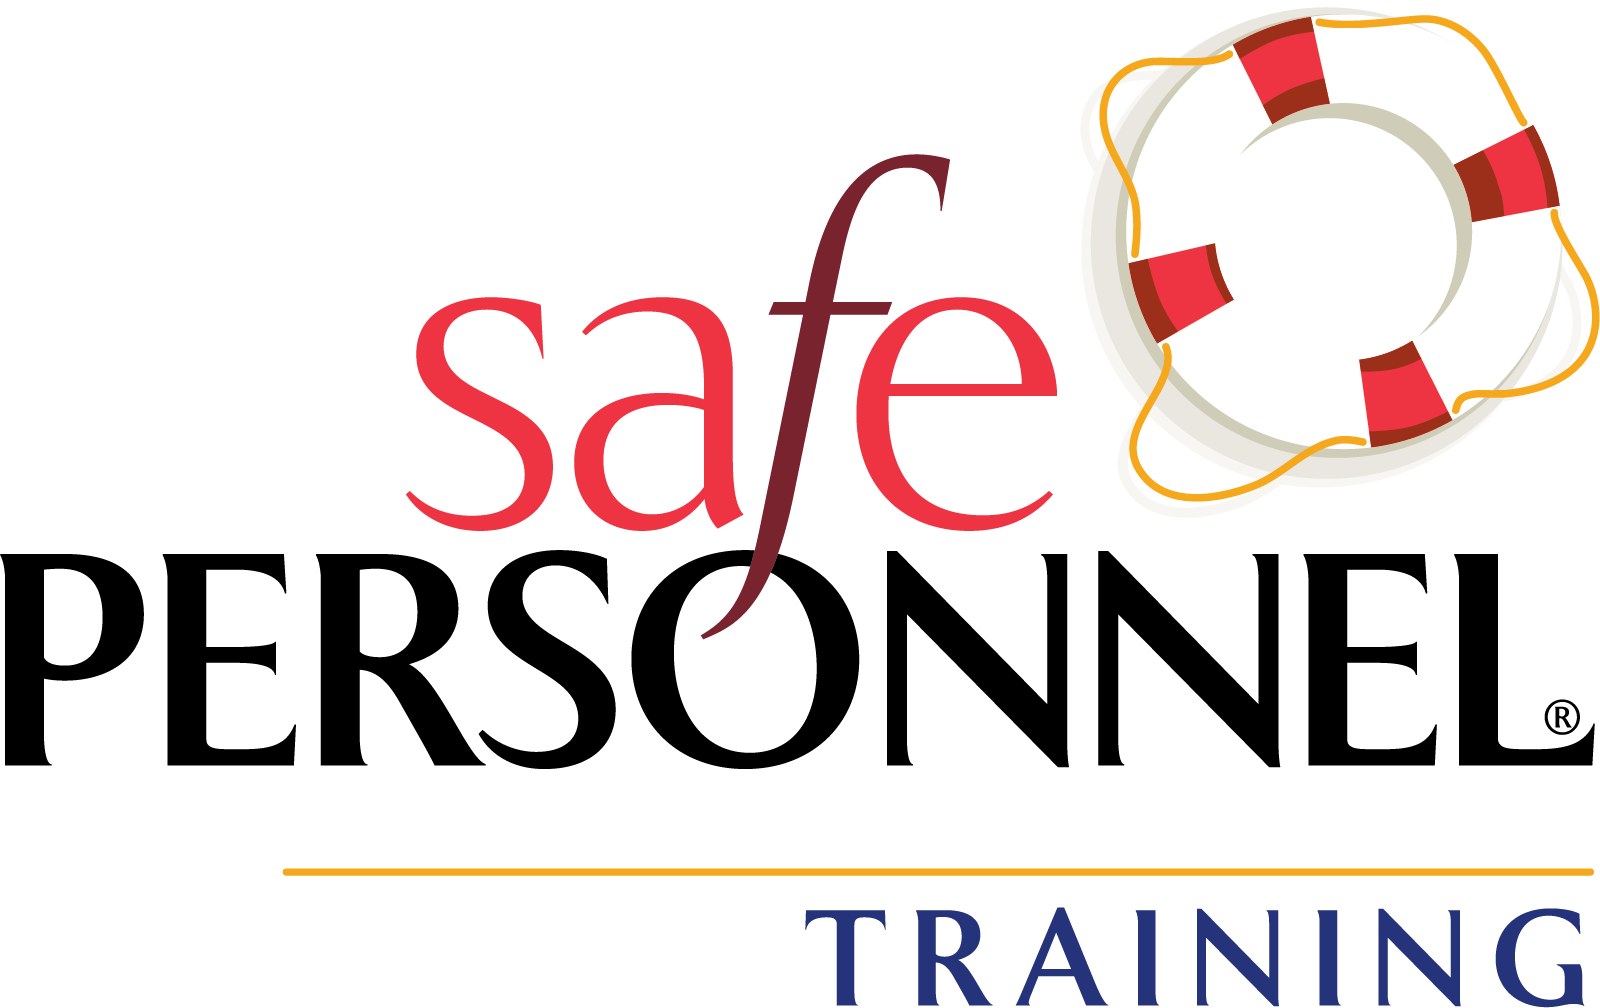 SMS’ SafePersonnel Training Platform